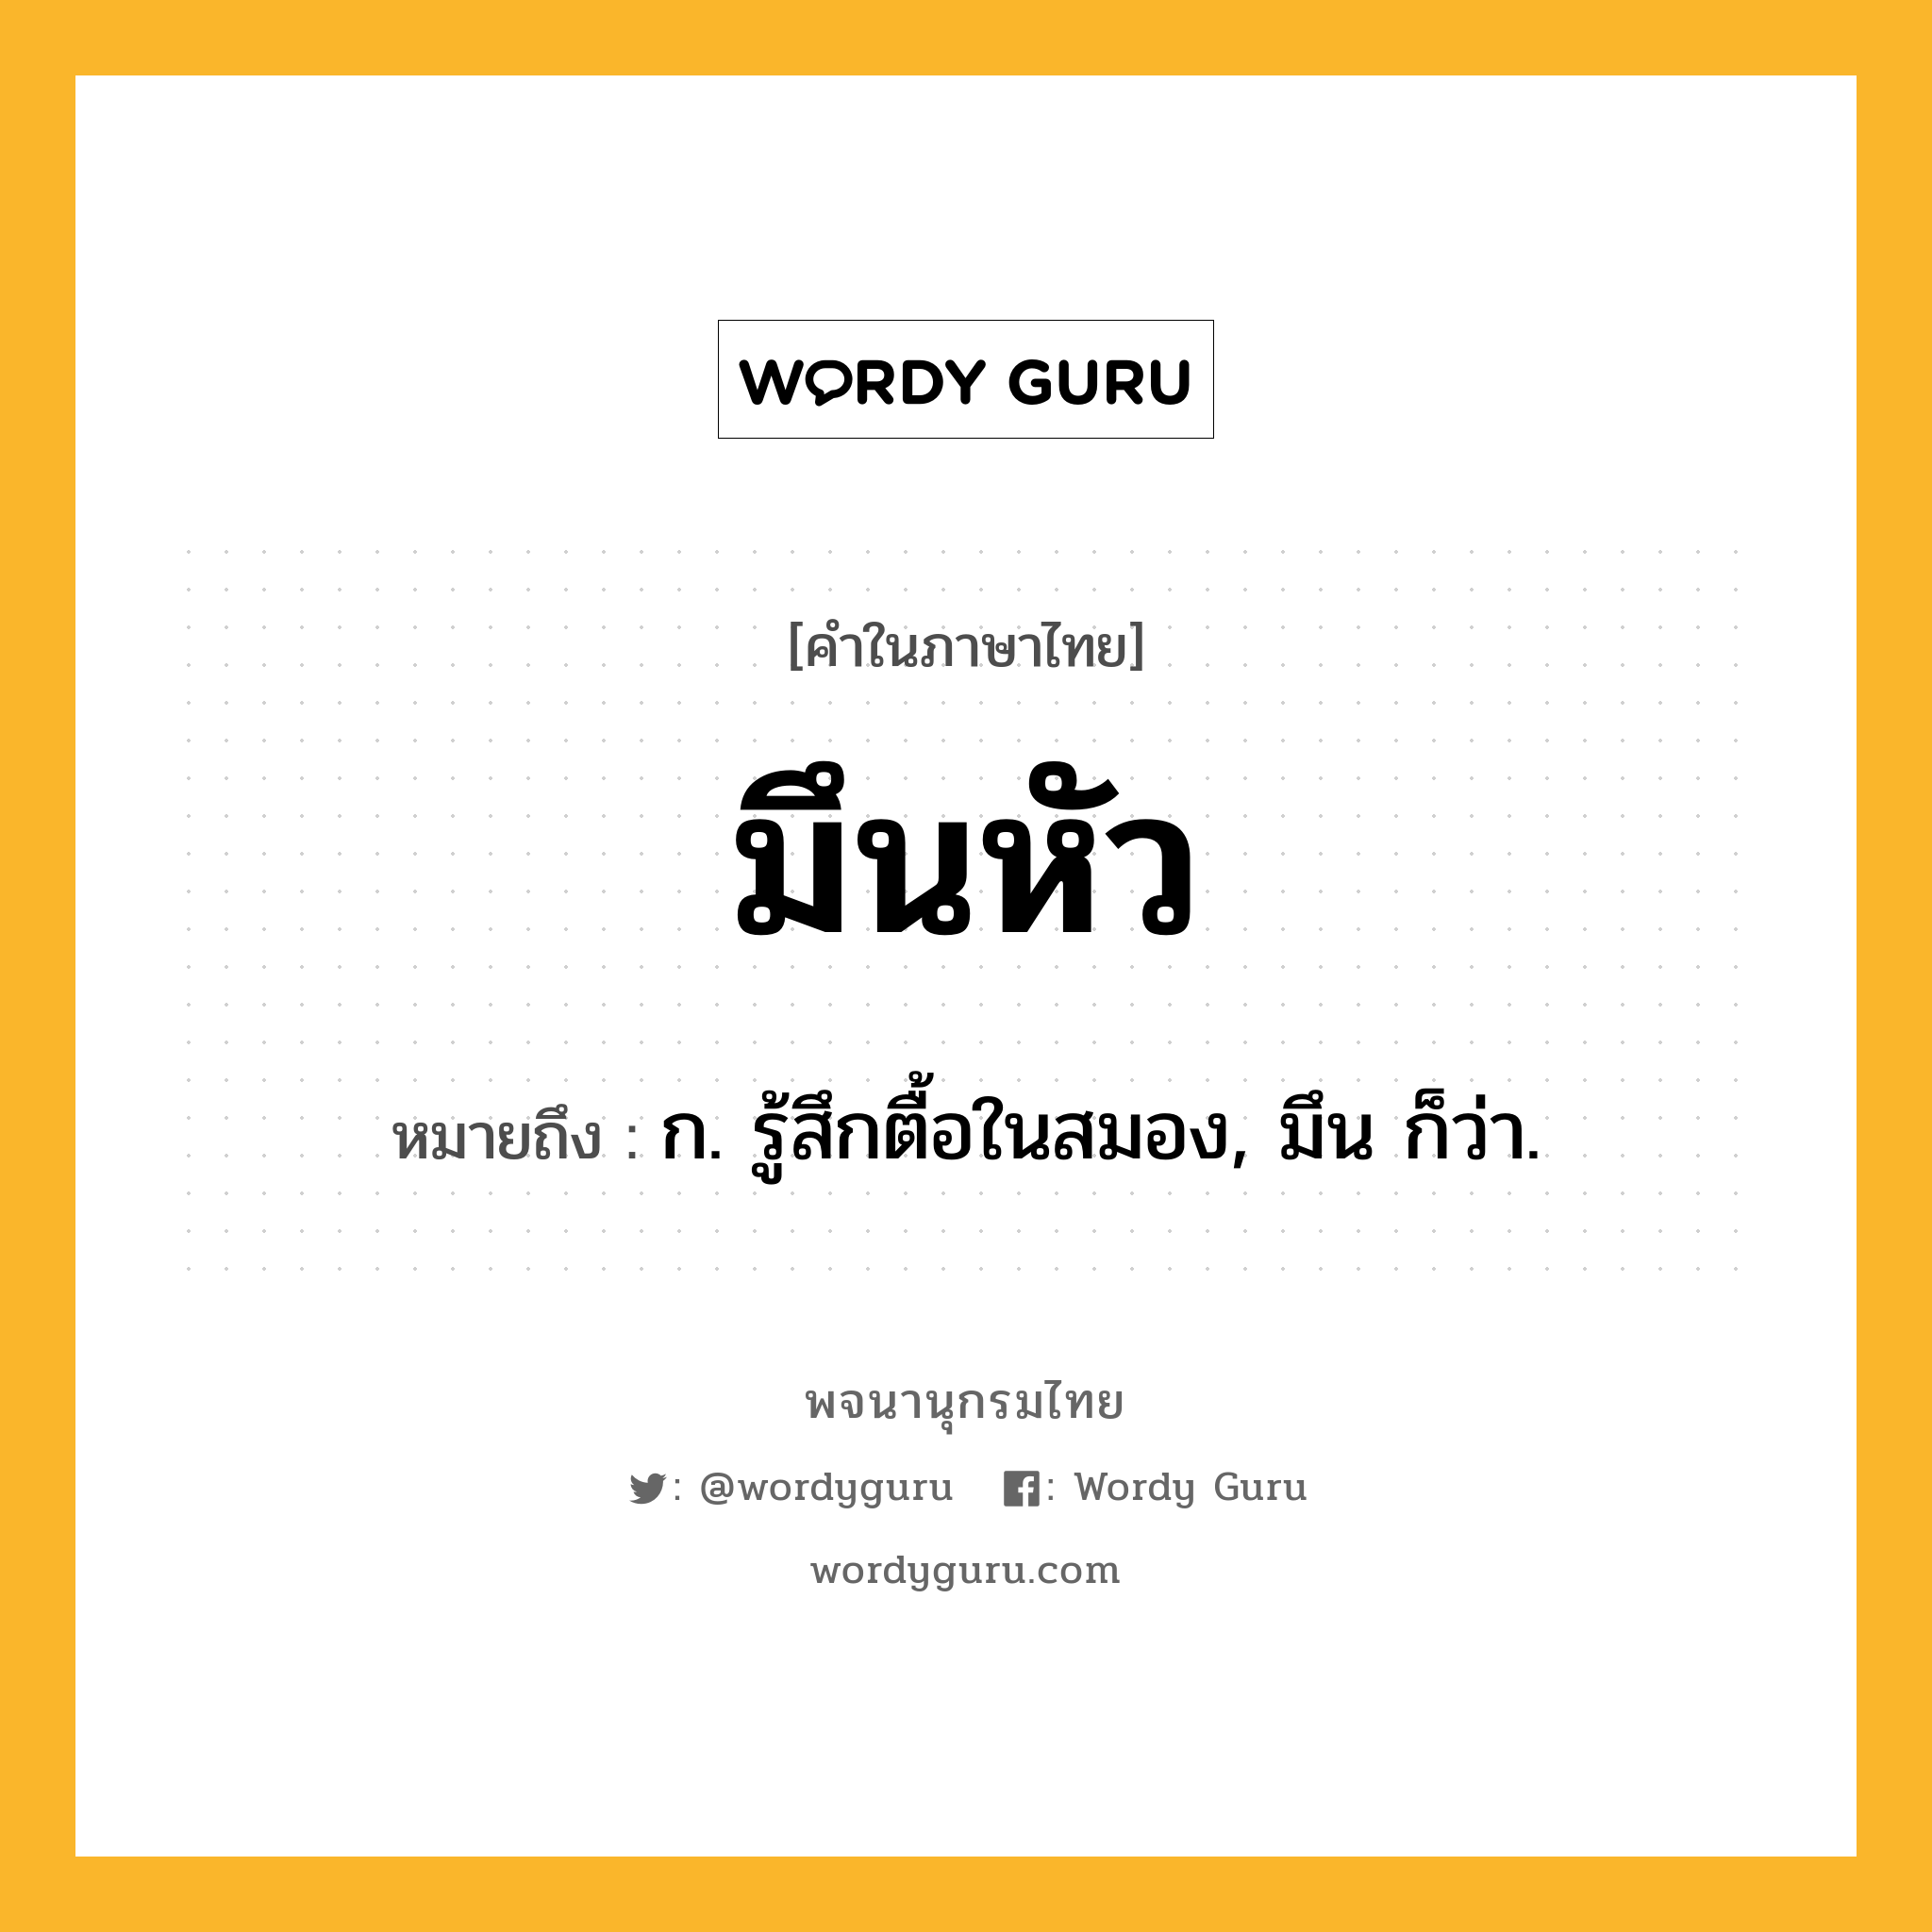 มึนหัว หมายถึงอะไร?, คำในภาษาไทย มึนหัว หมายถึง ก. รู้สึกตื้อในสมอง, มึน ก็ว่า.